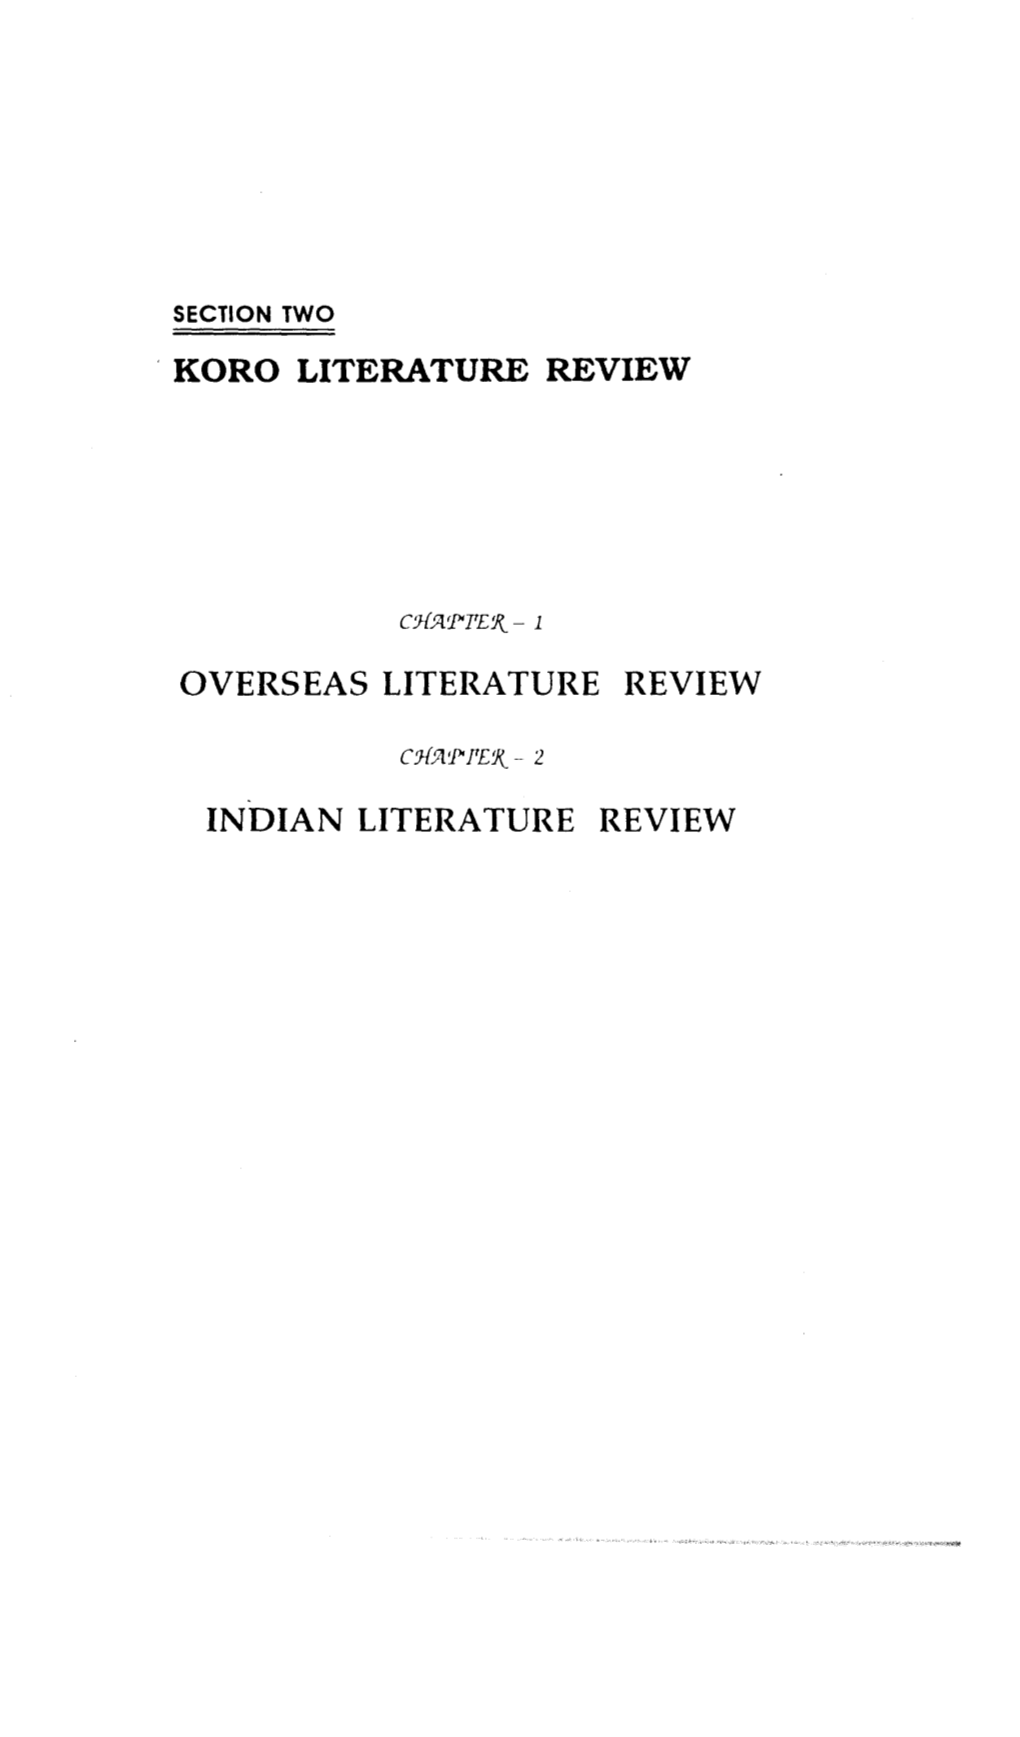 Koro Literature Review